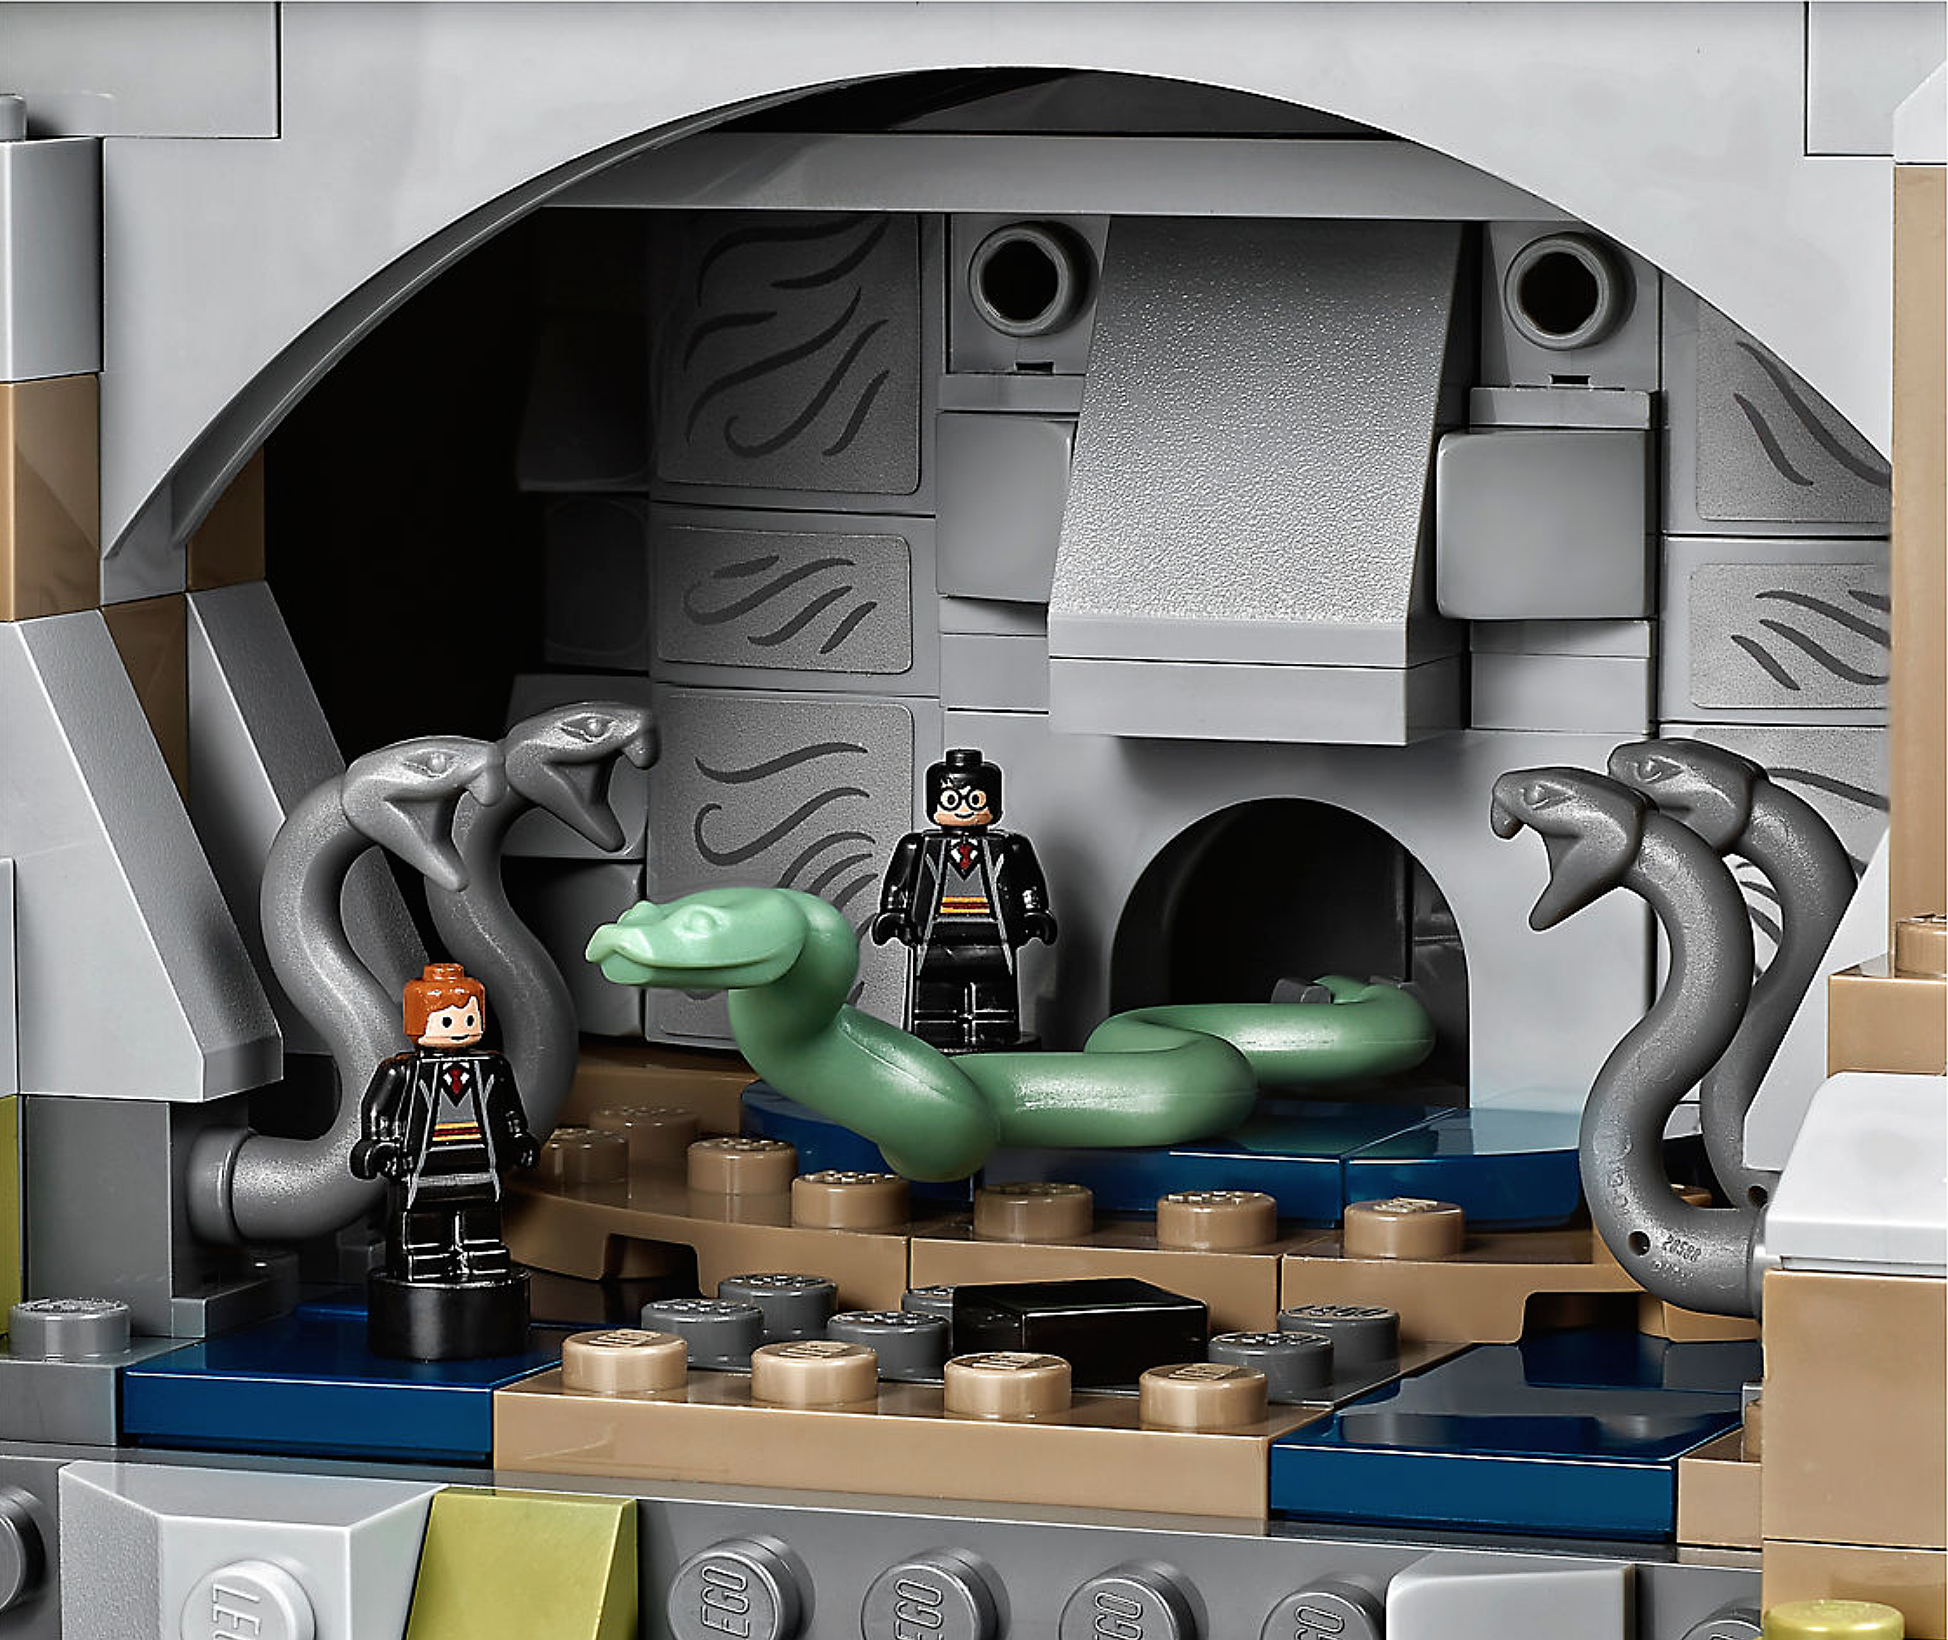 New âHarry Potterâ Hogwarts LEGO Set Is the Coolest Thing Ever